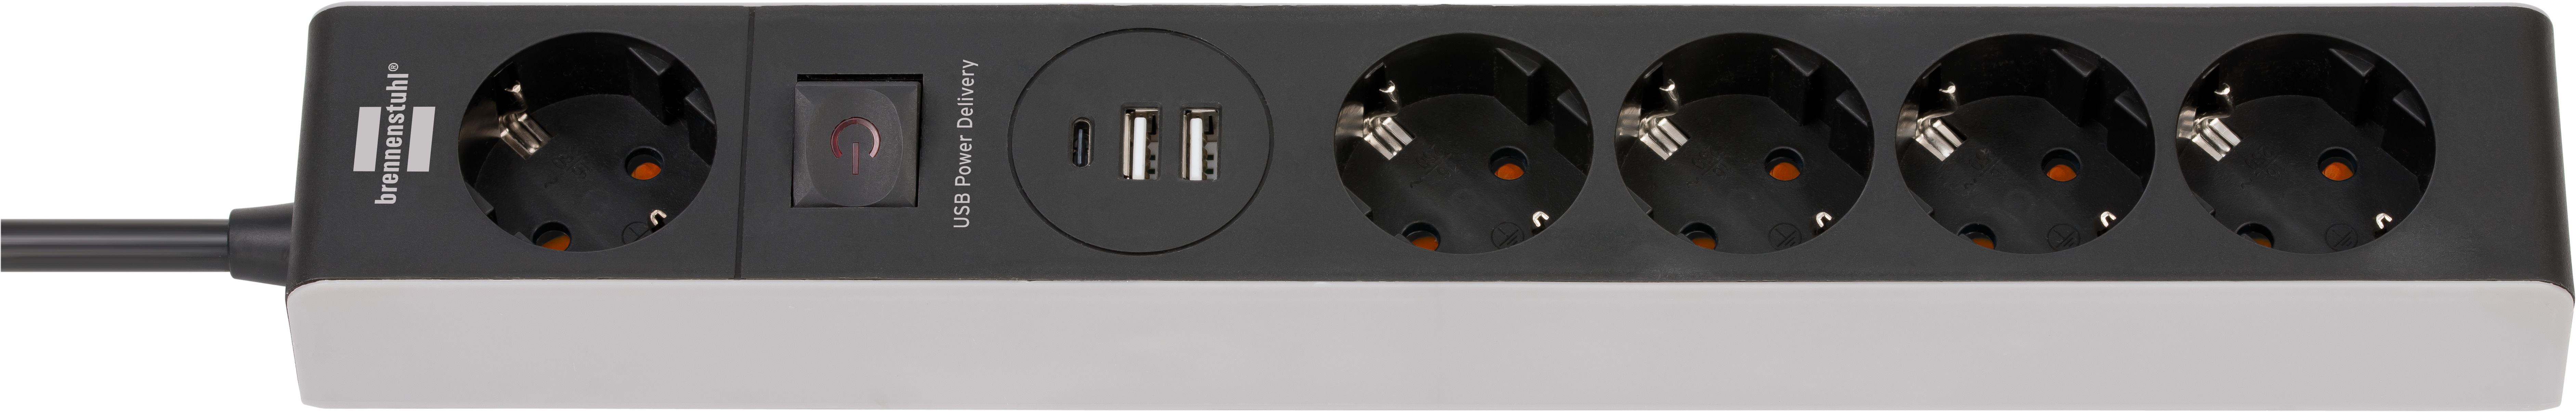 Stekkerdoos Met USB C Power Delivery 5-voudig Zwart/Grijs